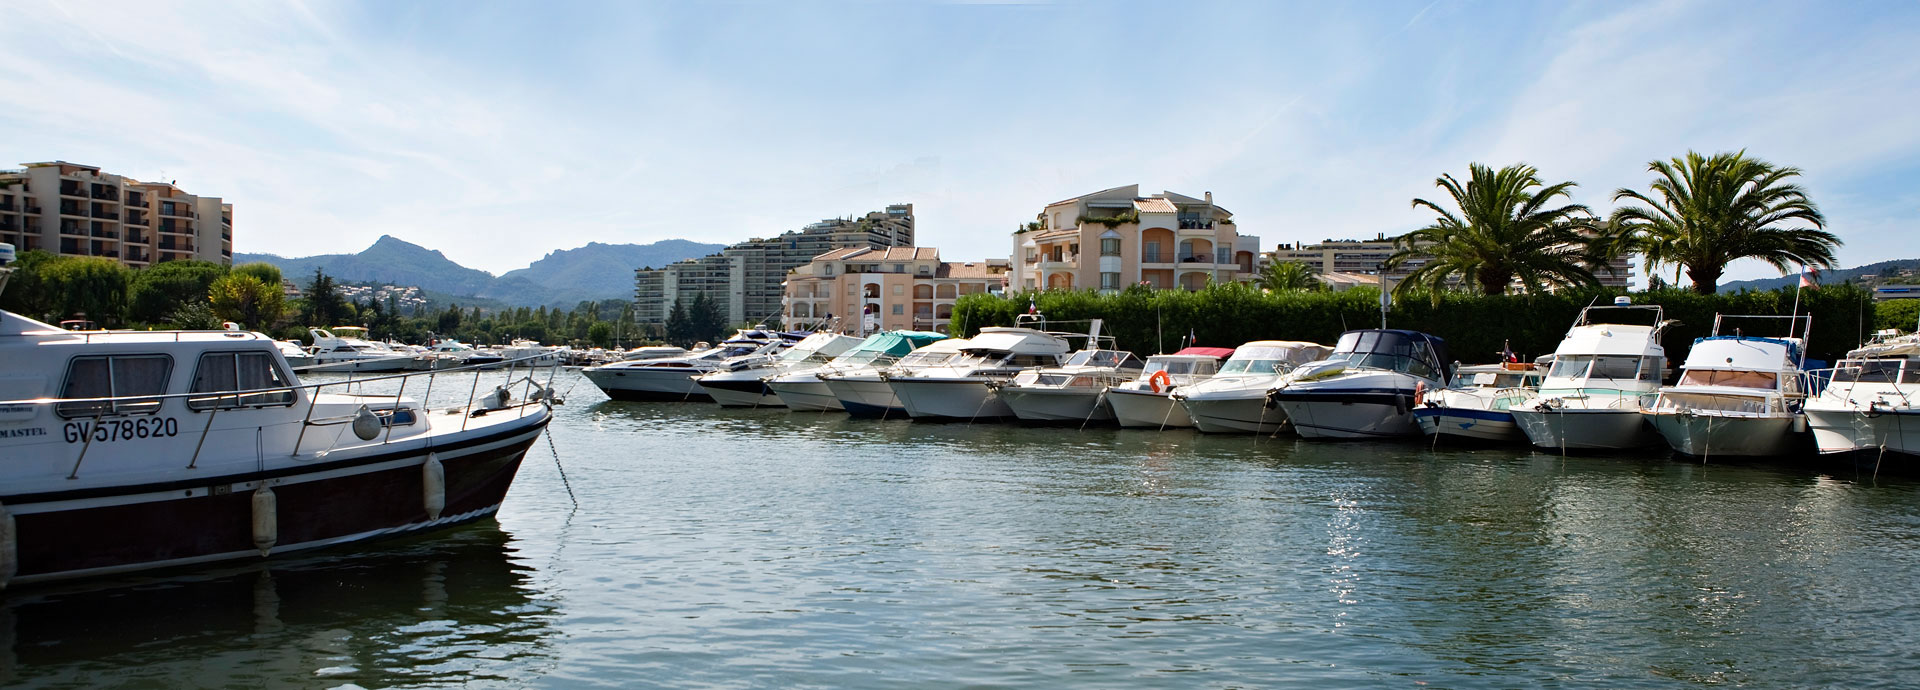 Cannes-Mandelieu la Napoule sur la Côte d'Azur : location vacances dans les Alpes-Maritimes